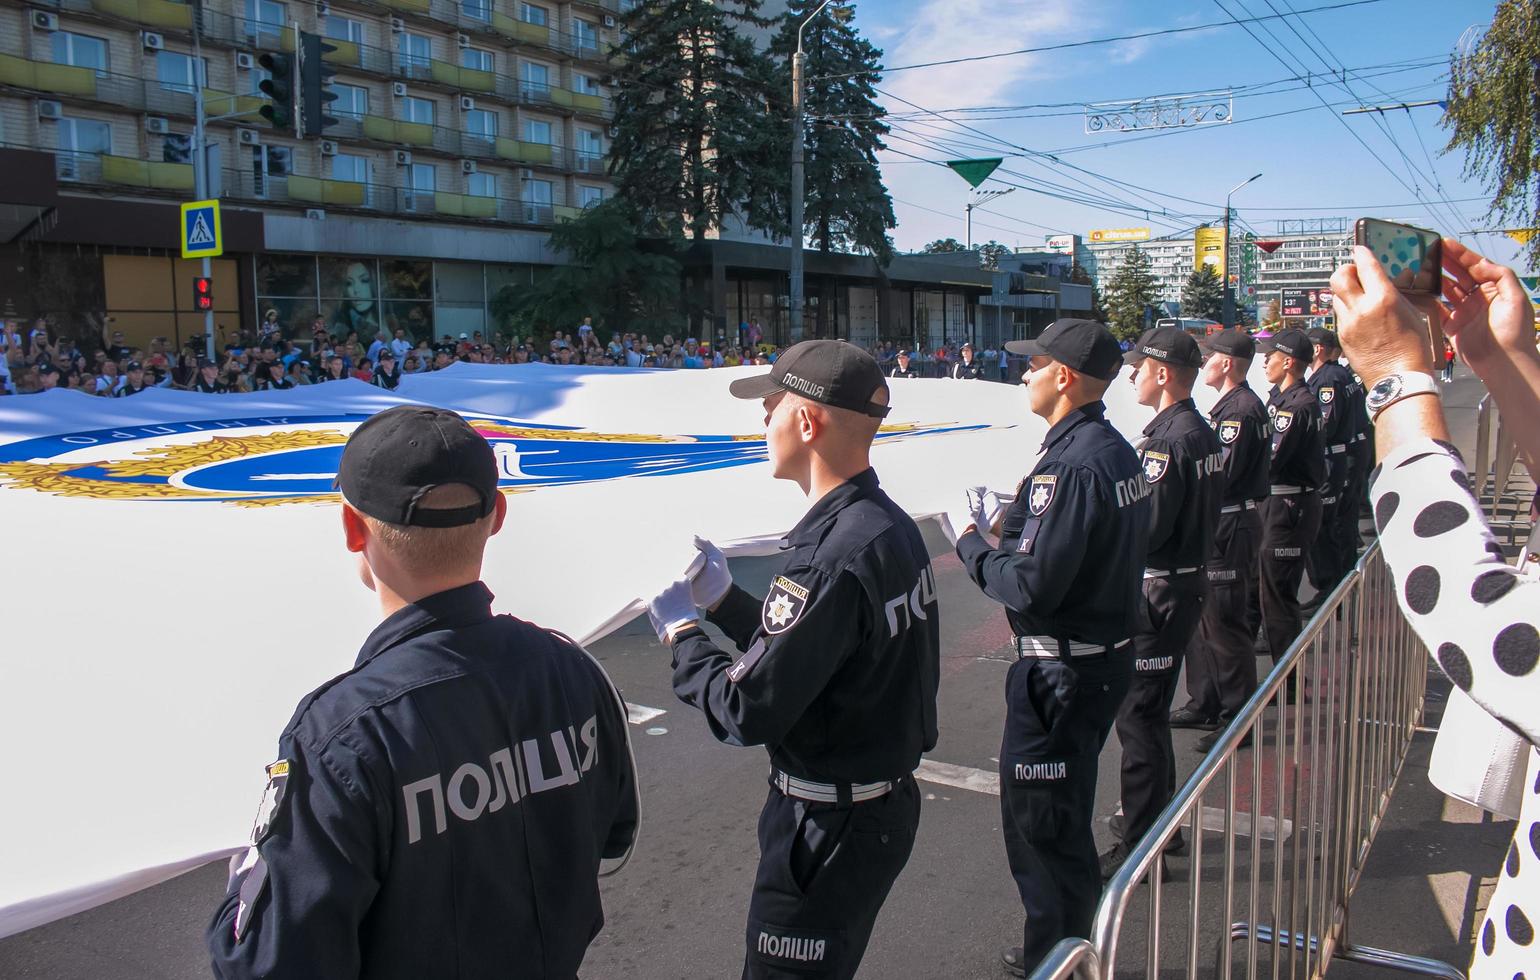 Dnipro, ukraine - 09.11.2021 Bürger feiern Stadttag. Polizisten tragen eine festliche Fahne. foto